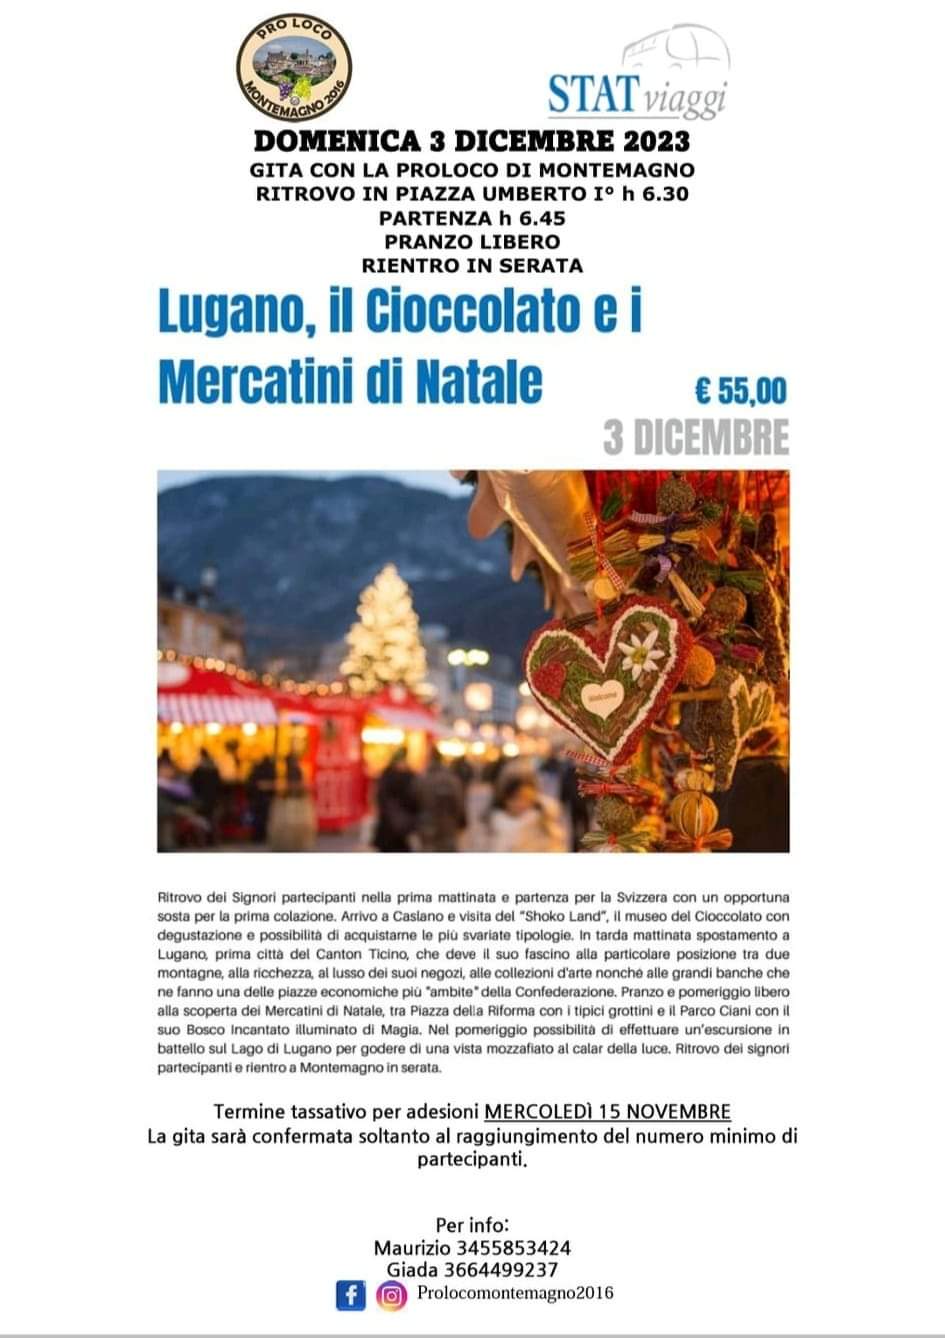 Lugano, il Cioccolato e i Mercatini di Natale